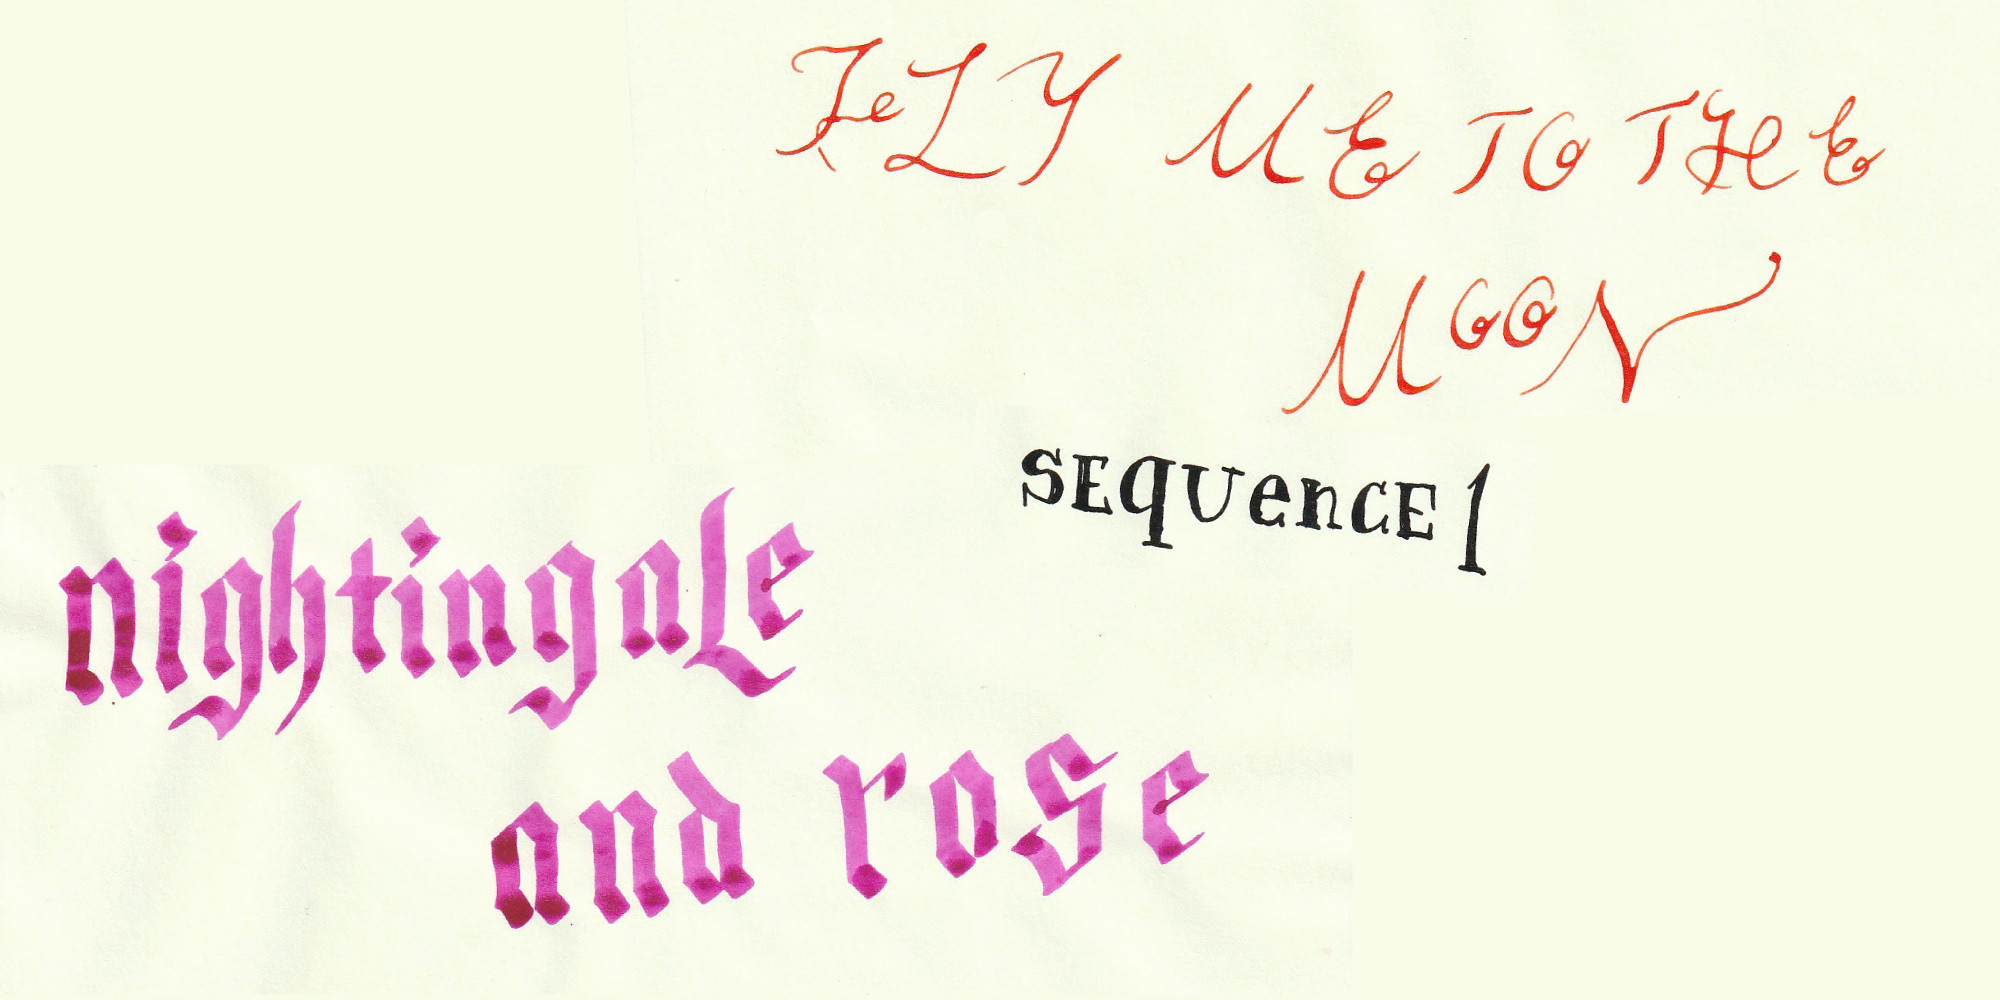 楊博個展「”Fly me to the moon” sequence1:Nightngale and Rose」